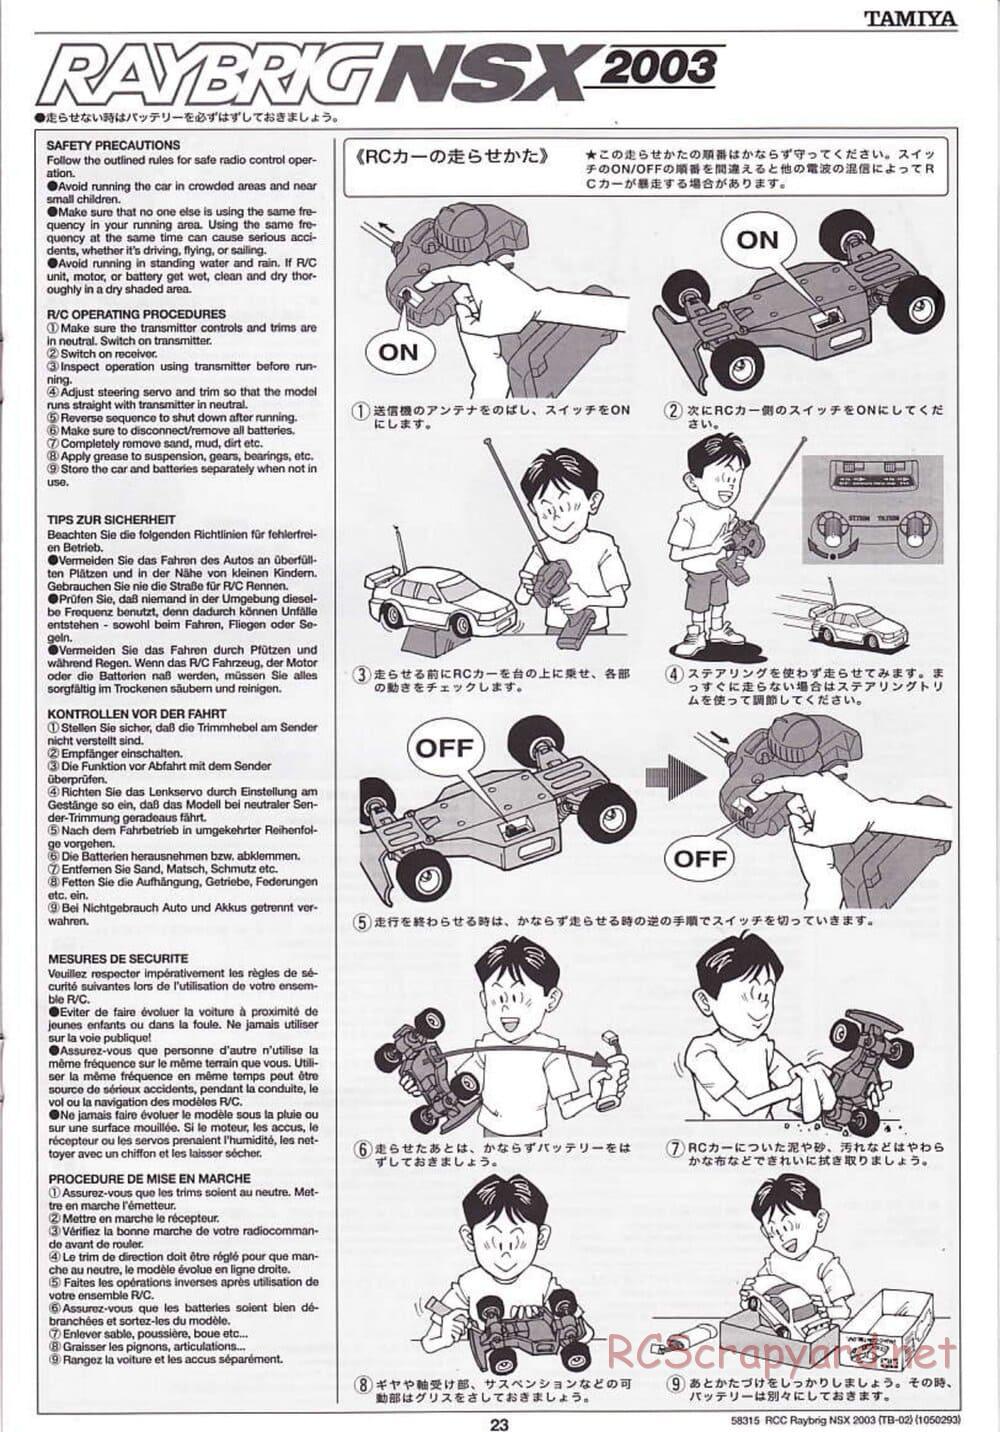 Tamiya - Raybrig NSX 2003 - TB-02 Chassis - Manual - Page 23